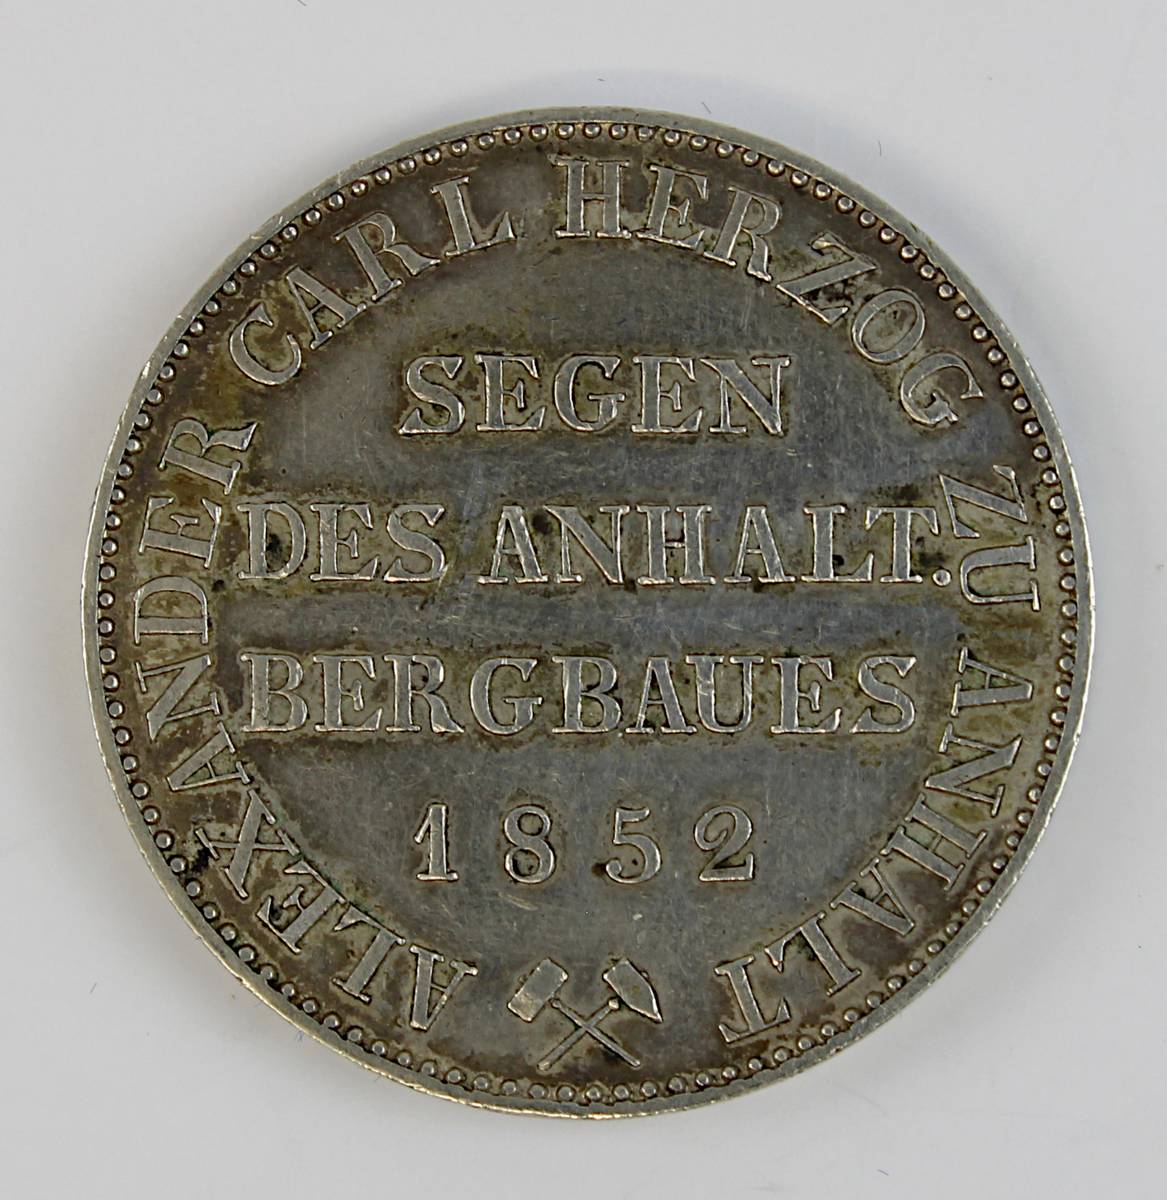 Alexander Carl Herzog zu Anhalt-Bernburg, 1 Thaler / Ausbeutertaler 1852, Silber, D: 3,5 cm, Auflage - Image 2 of 2